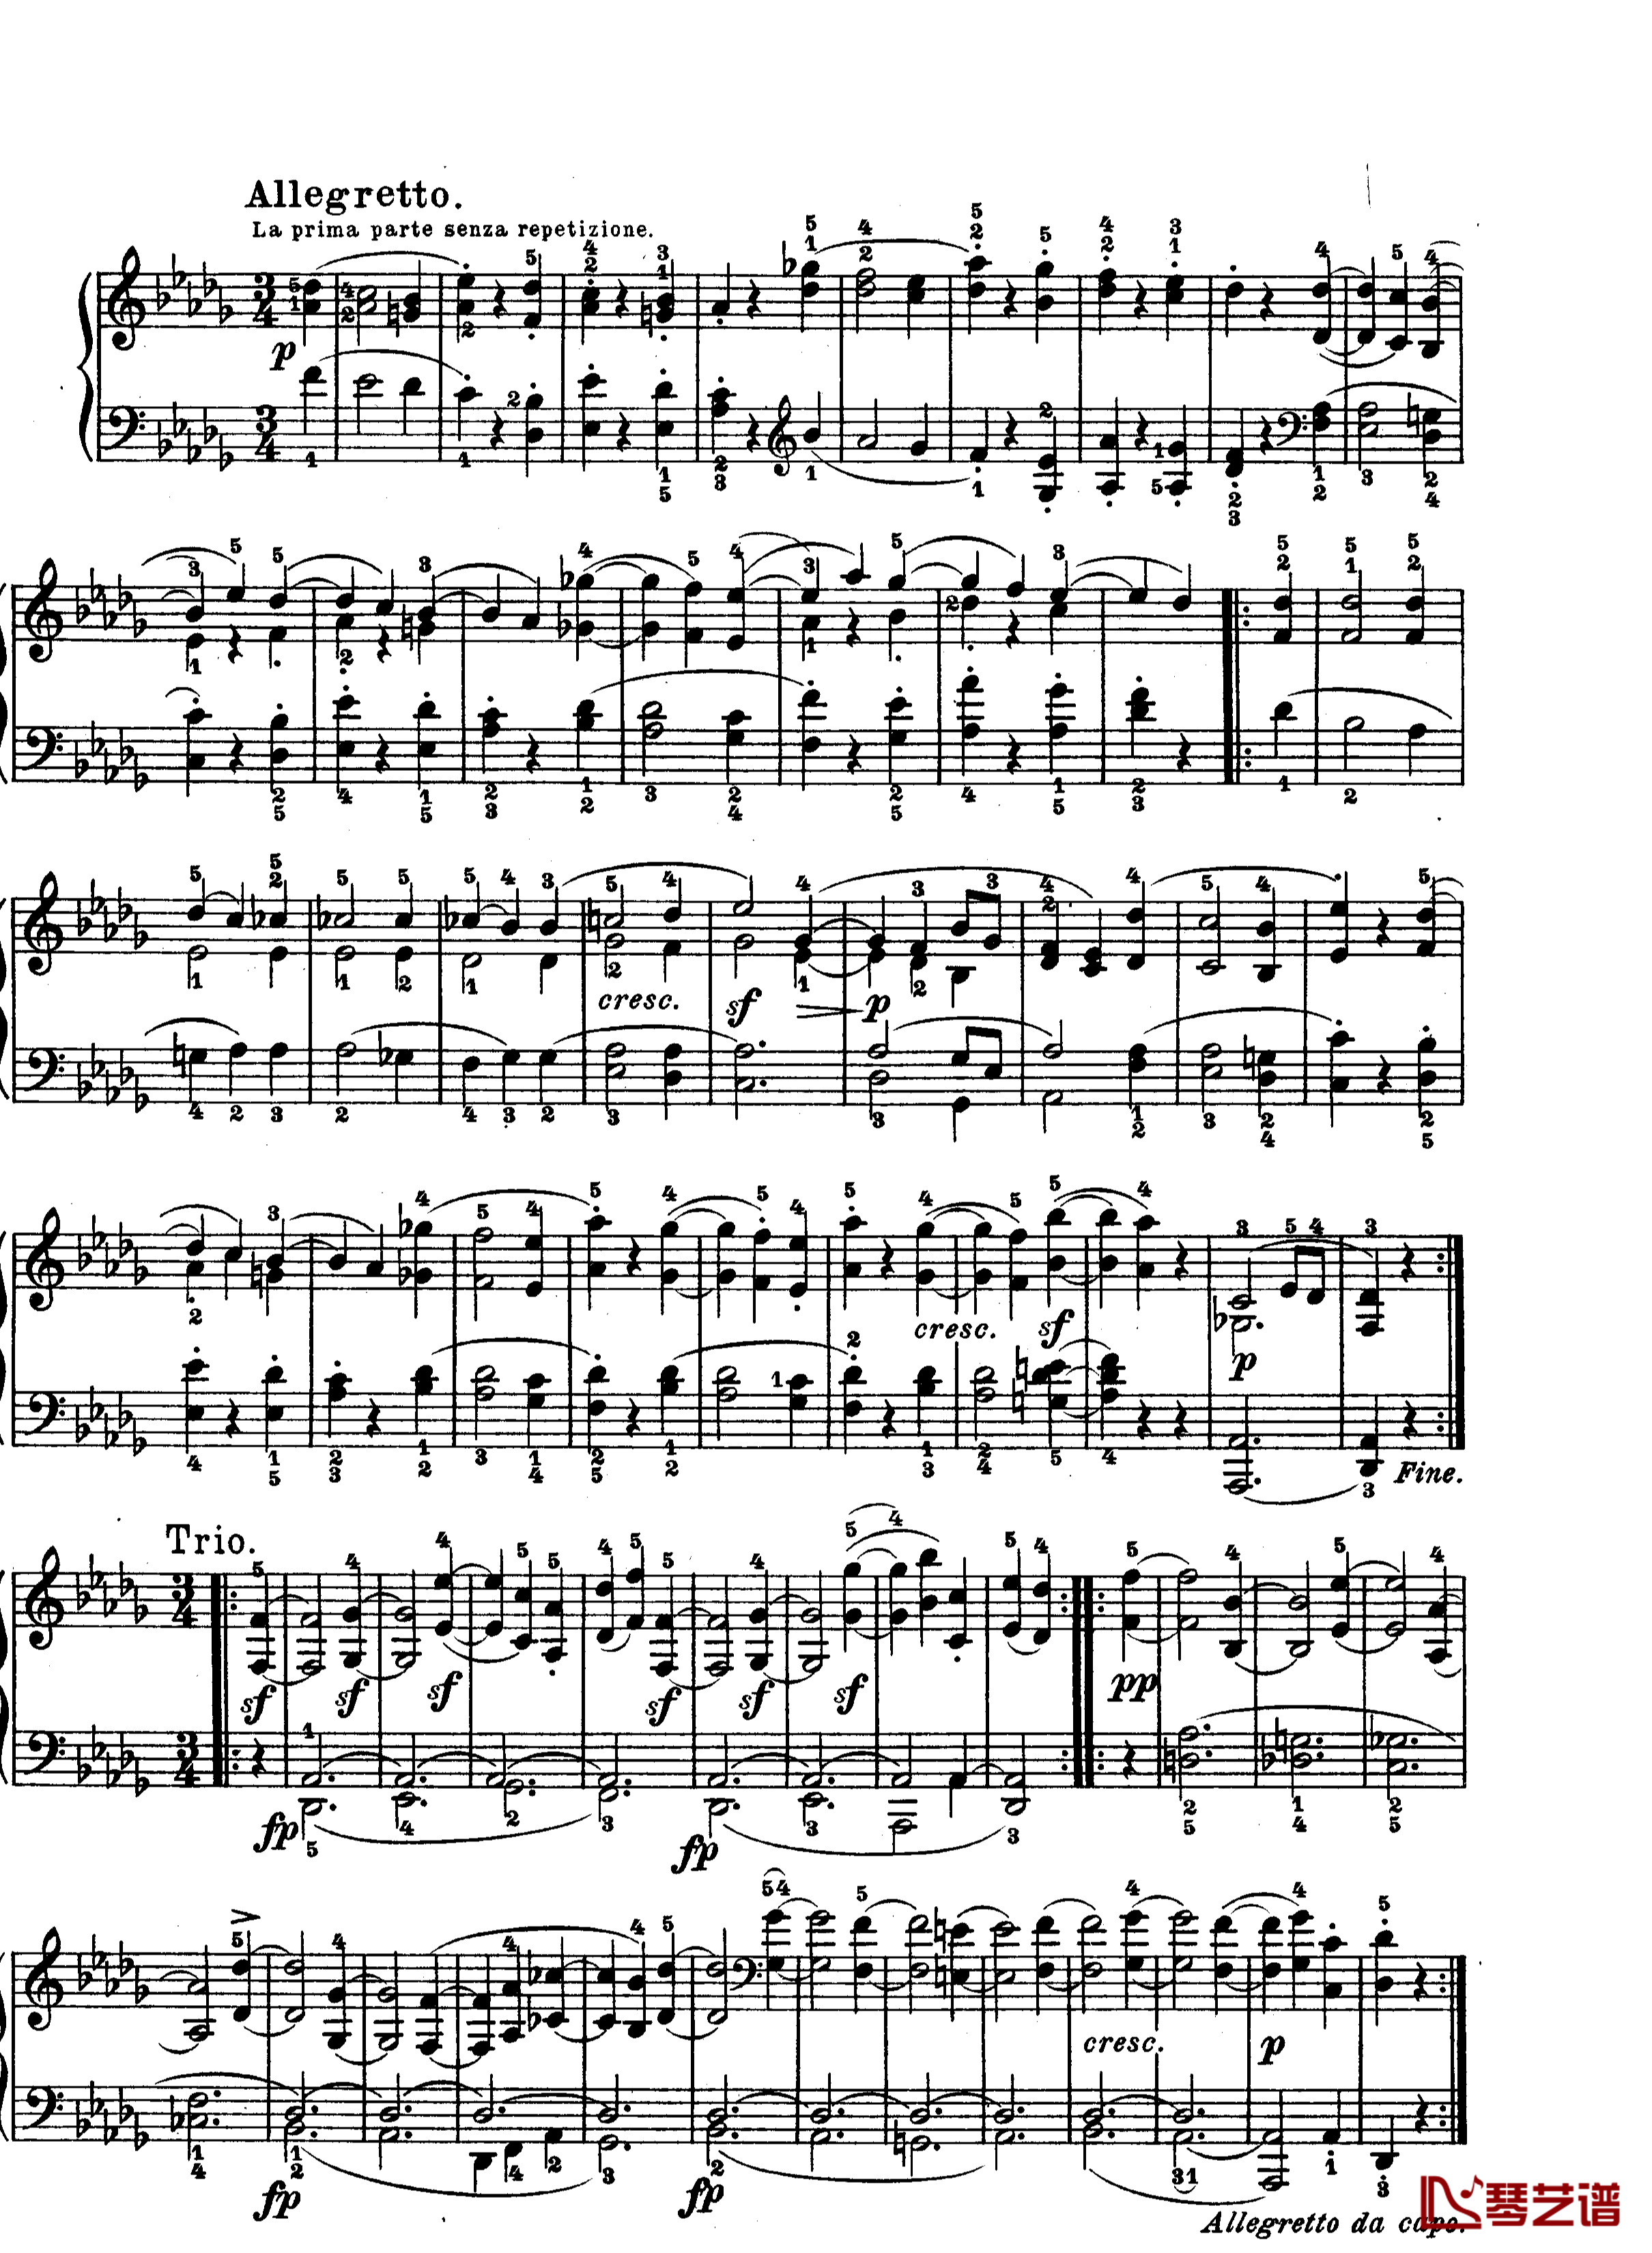 月光曲钢琴谱-第十四钢琴奏鸣曲-Op.27 No.2-贝多芬-beethoven4